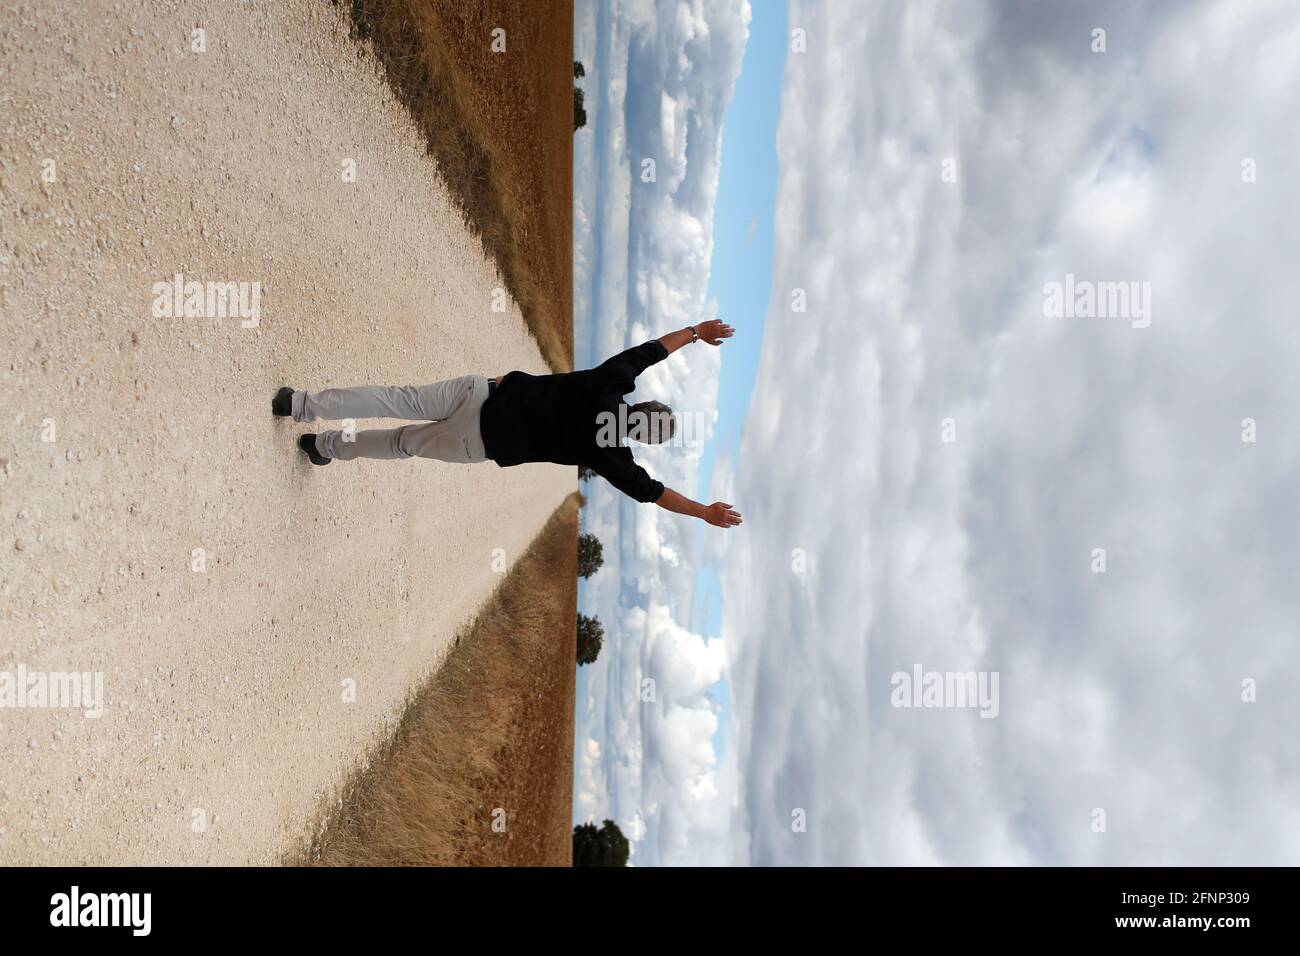 Un homme heureux marchant seul sur une route de campagne droite. Ciel nuageux. France. Banque D'Images